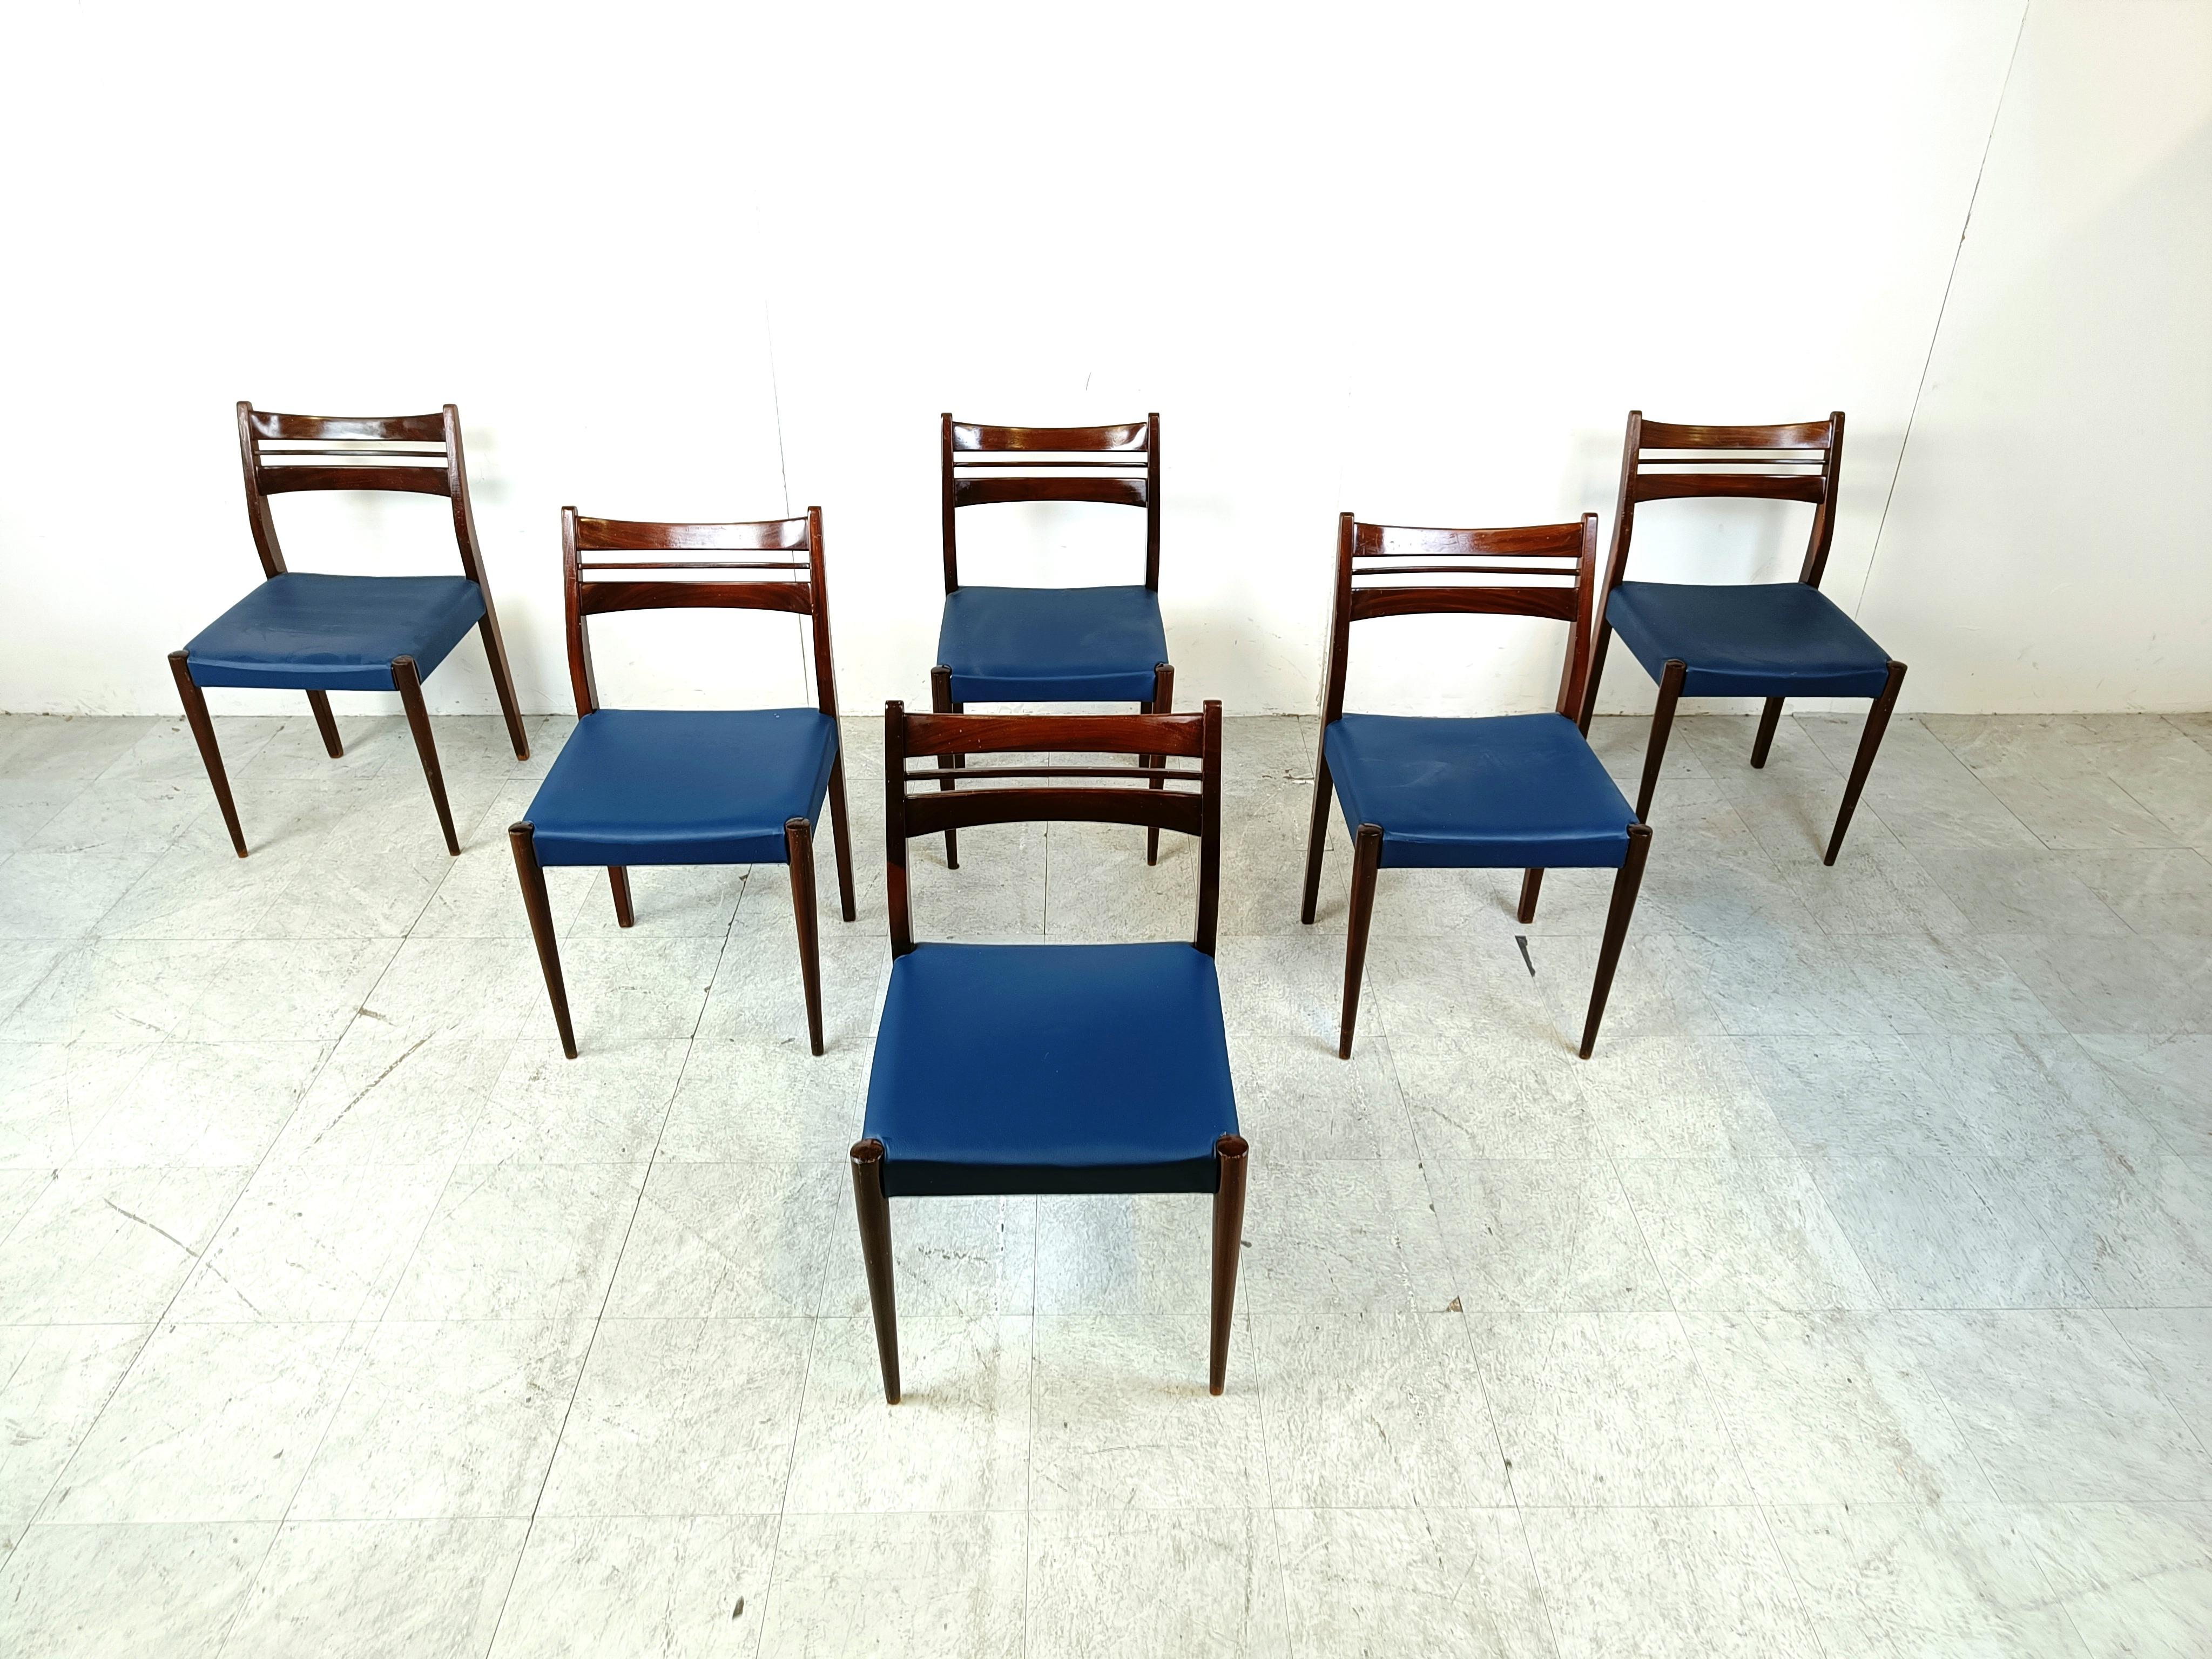 Chaises de salle à manger en bois du milieu du siècle avec sièges en simili-cuir bleu.

Un beau design scandinave, avec un souci de qualité. Remarquez le beau veinage du bois.

Bon état

Années 1960 - Danemark

Hauteur : 82cm
Largeur : 47